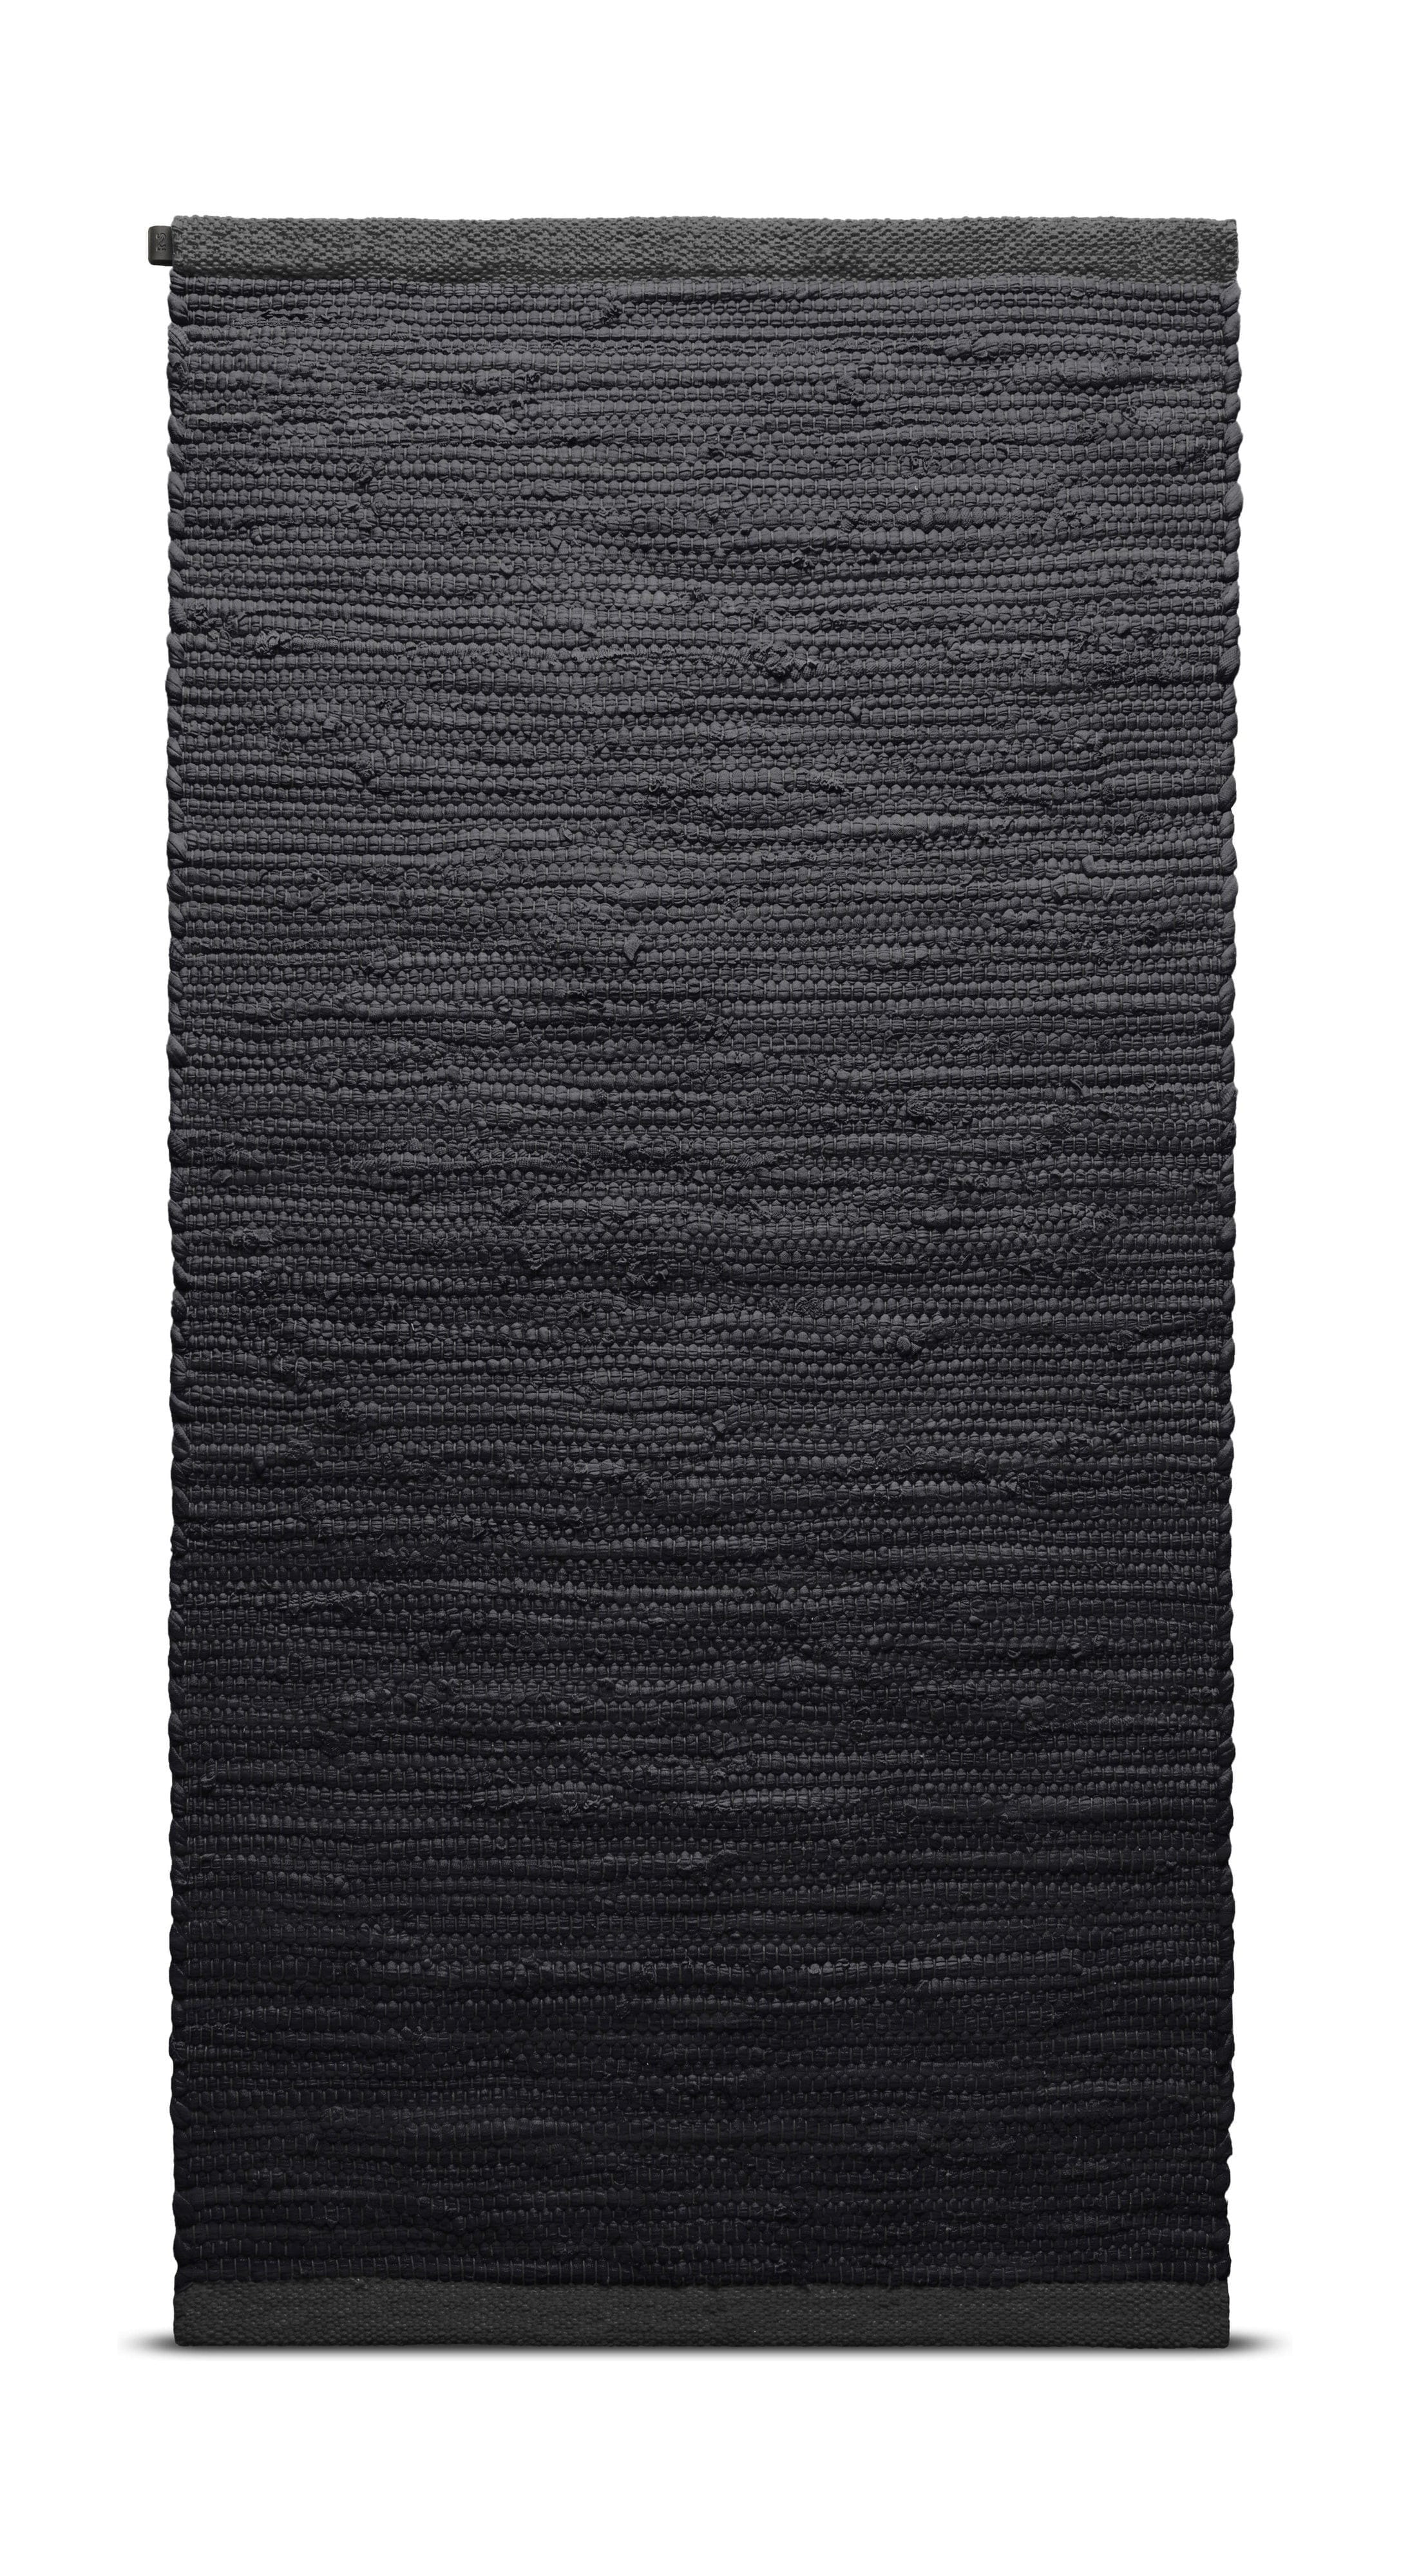 地毯固体棉床75 x 200厘米，木炭